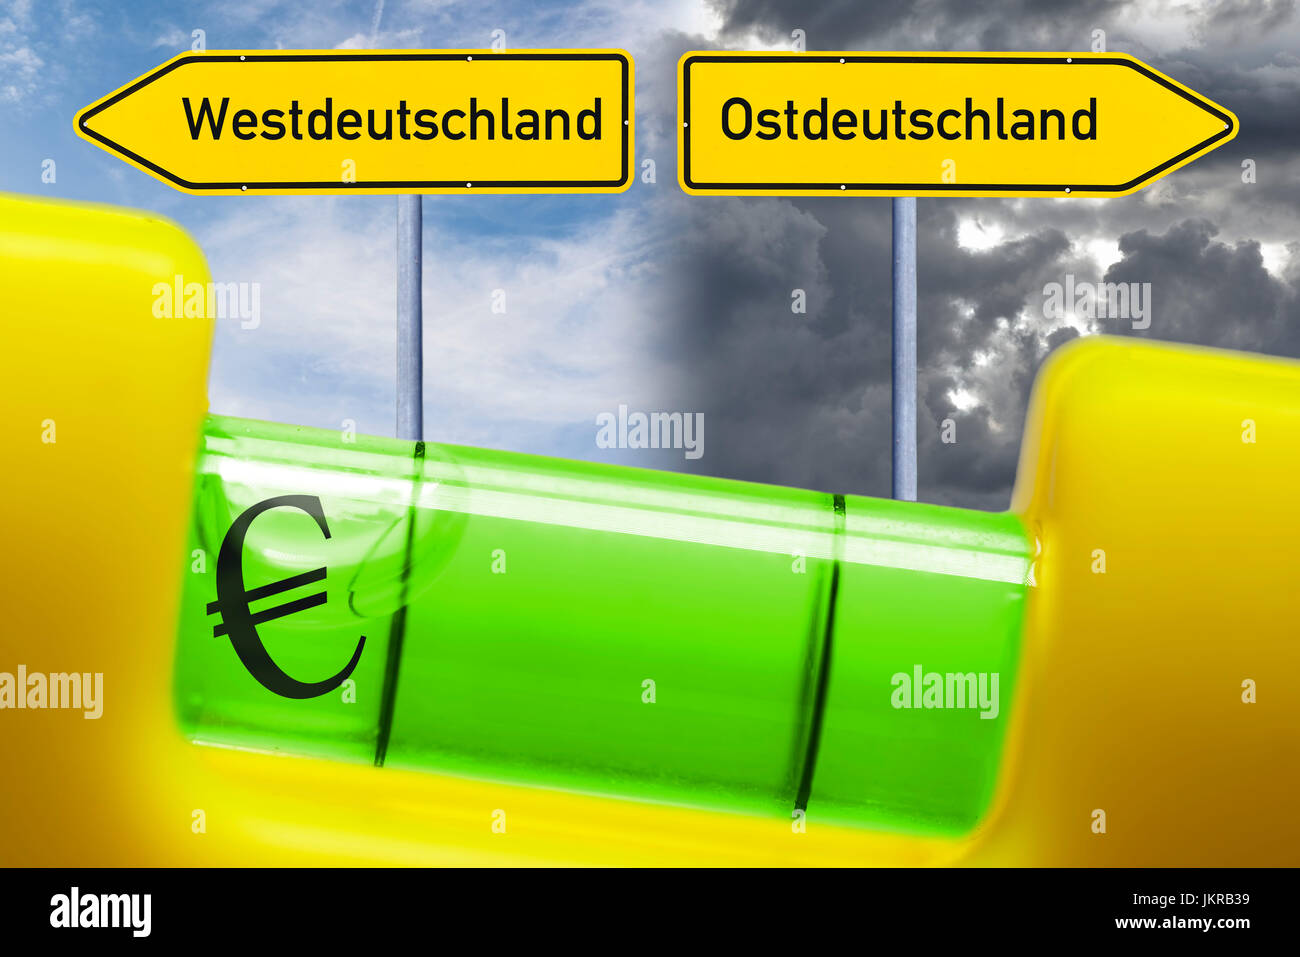 Spirit level in the imbalance, unequal salaries in west country and Eastern Germany, Wasserwaage im Ungleichgewicht, ungleiche Gehälter in West- und O Stock Photo